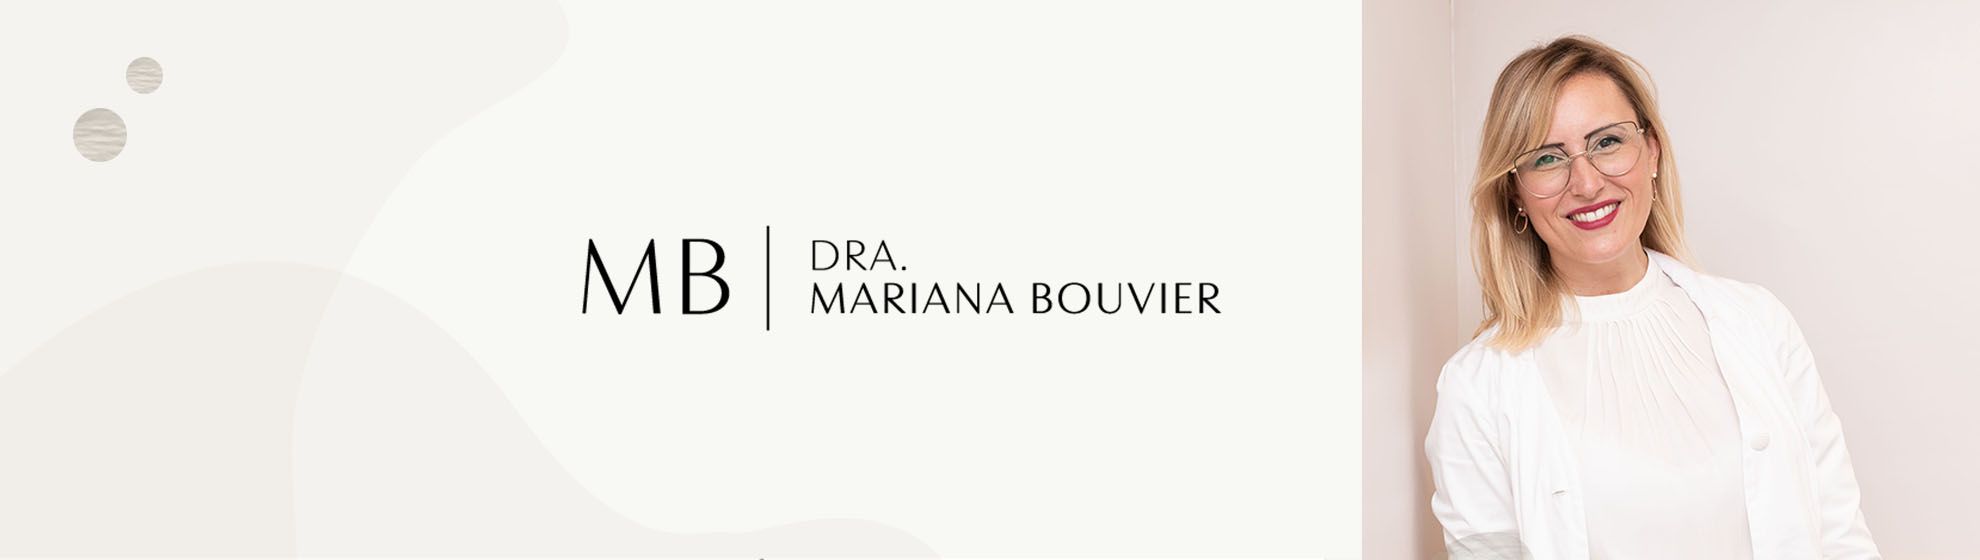 Dra. Mariana Bouvier